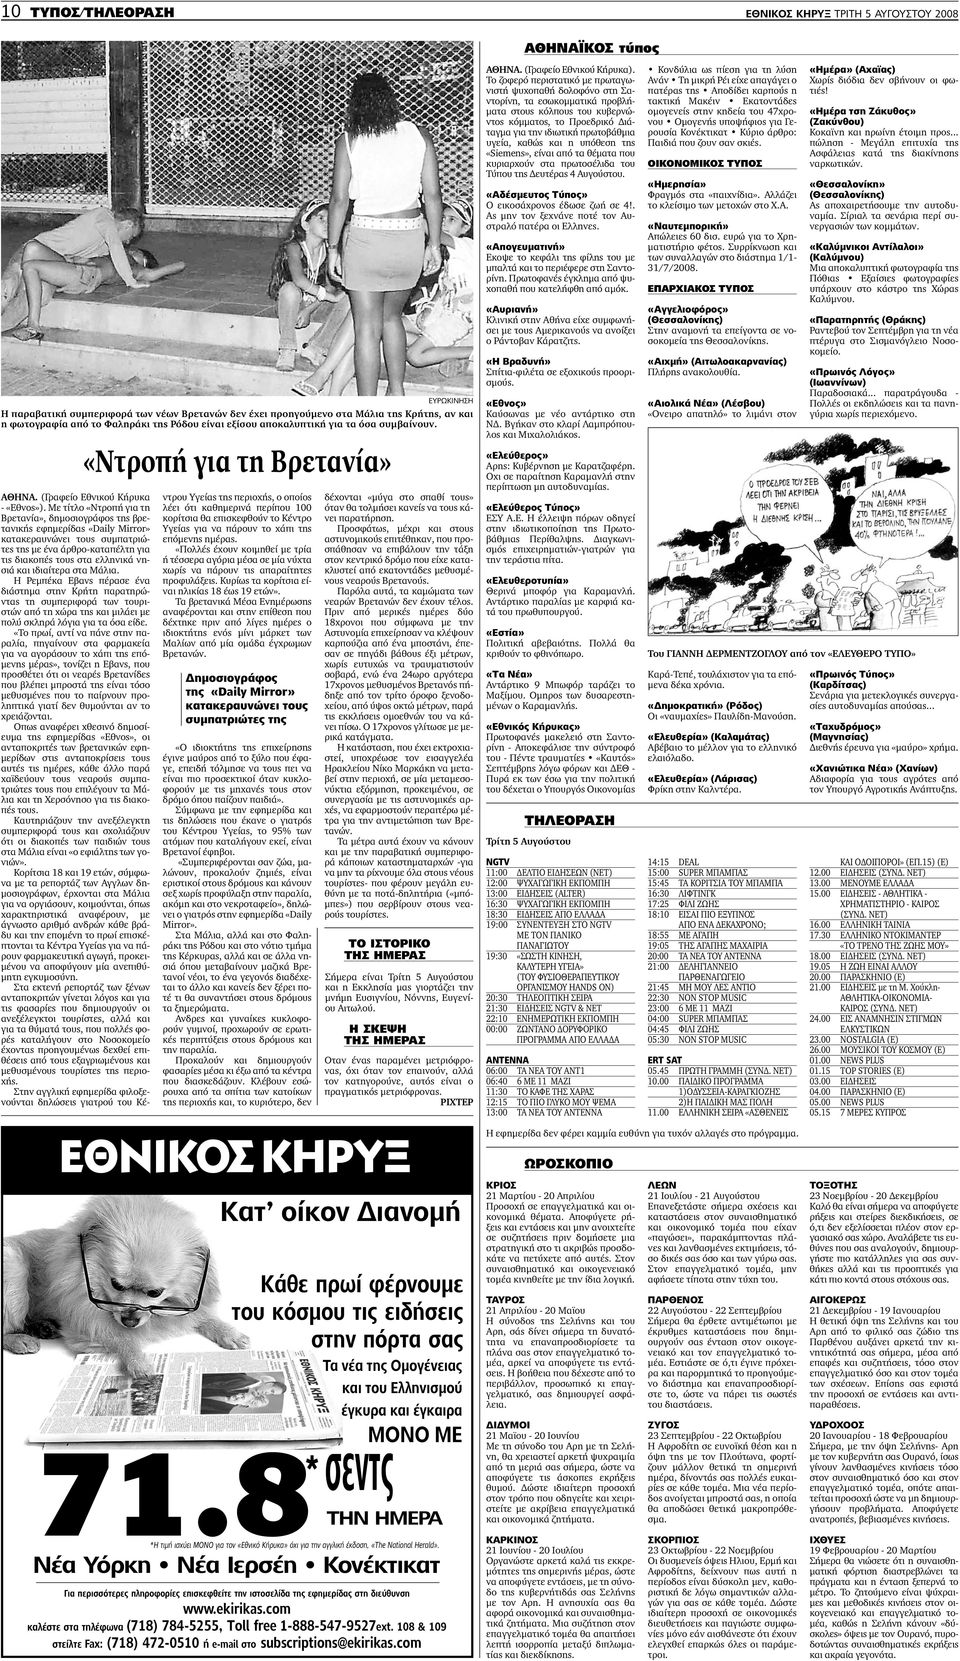 Με τίτλο «Ντροπή για τη Βρετανία», δηµοσιογράφος της βρετανικής εφηµερίδας «Daily Μirror» κατακεραυνώνει τους συµπατριώτες της µε ένα άρθρο-καταπέλτη για τις διακοπές τους στα ελληνικά νησιά και